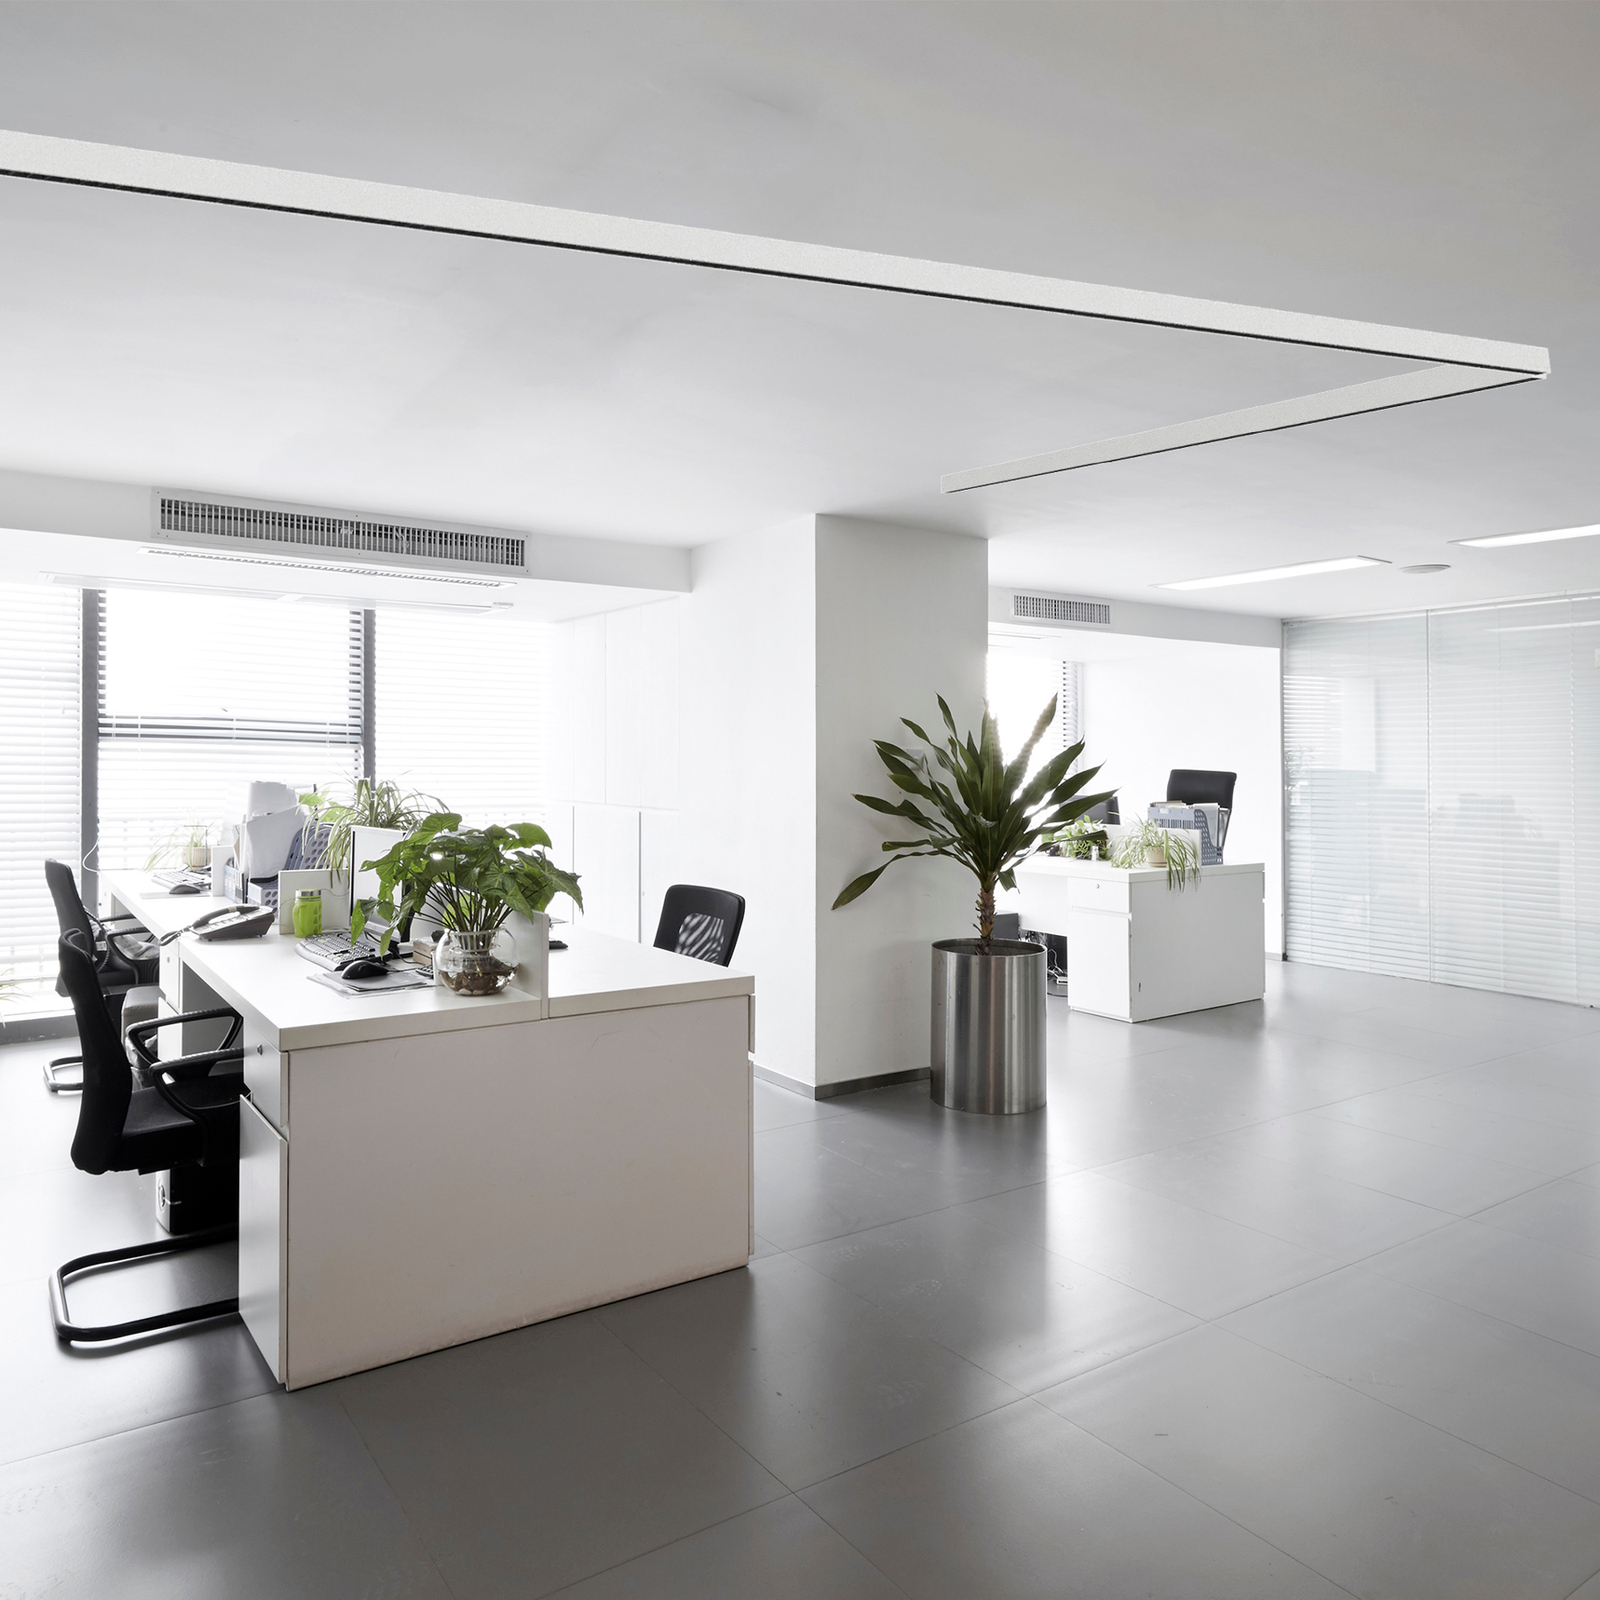 LI-EX Office LED-es felszíni világítás Távoli 190cm fehér